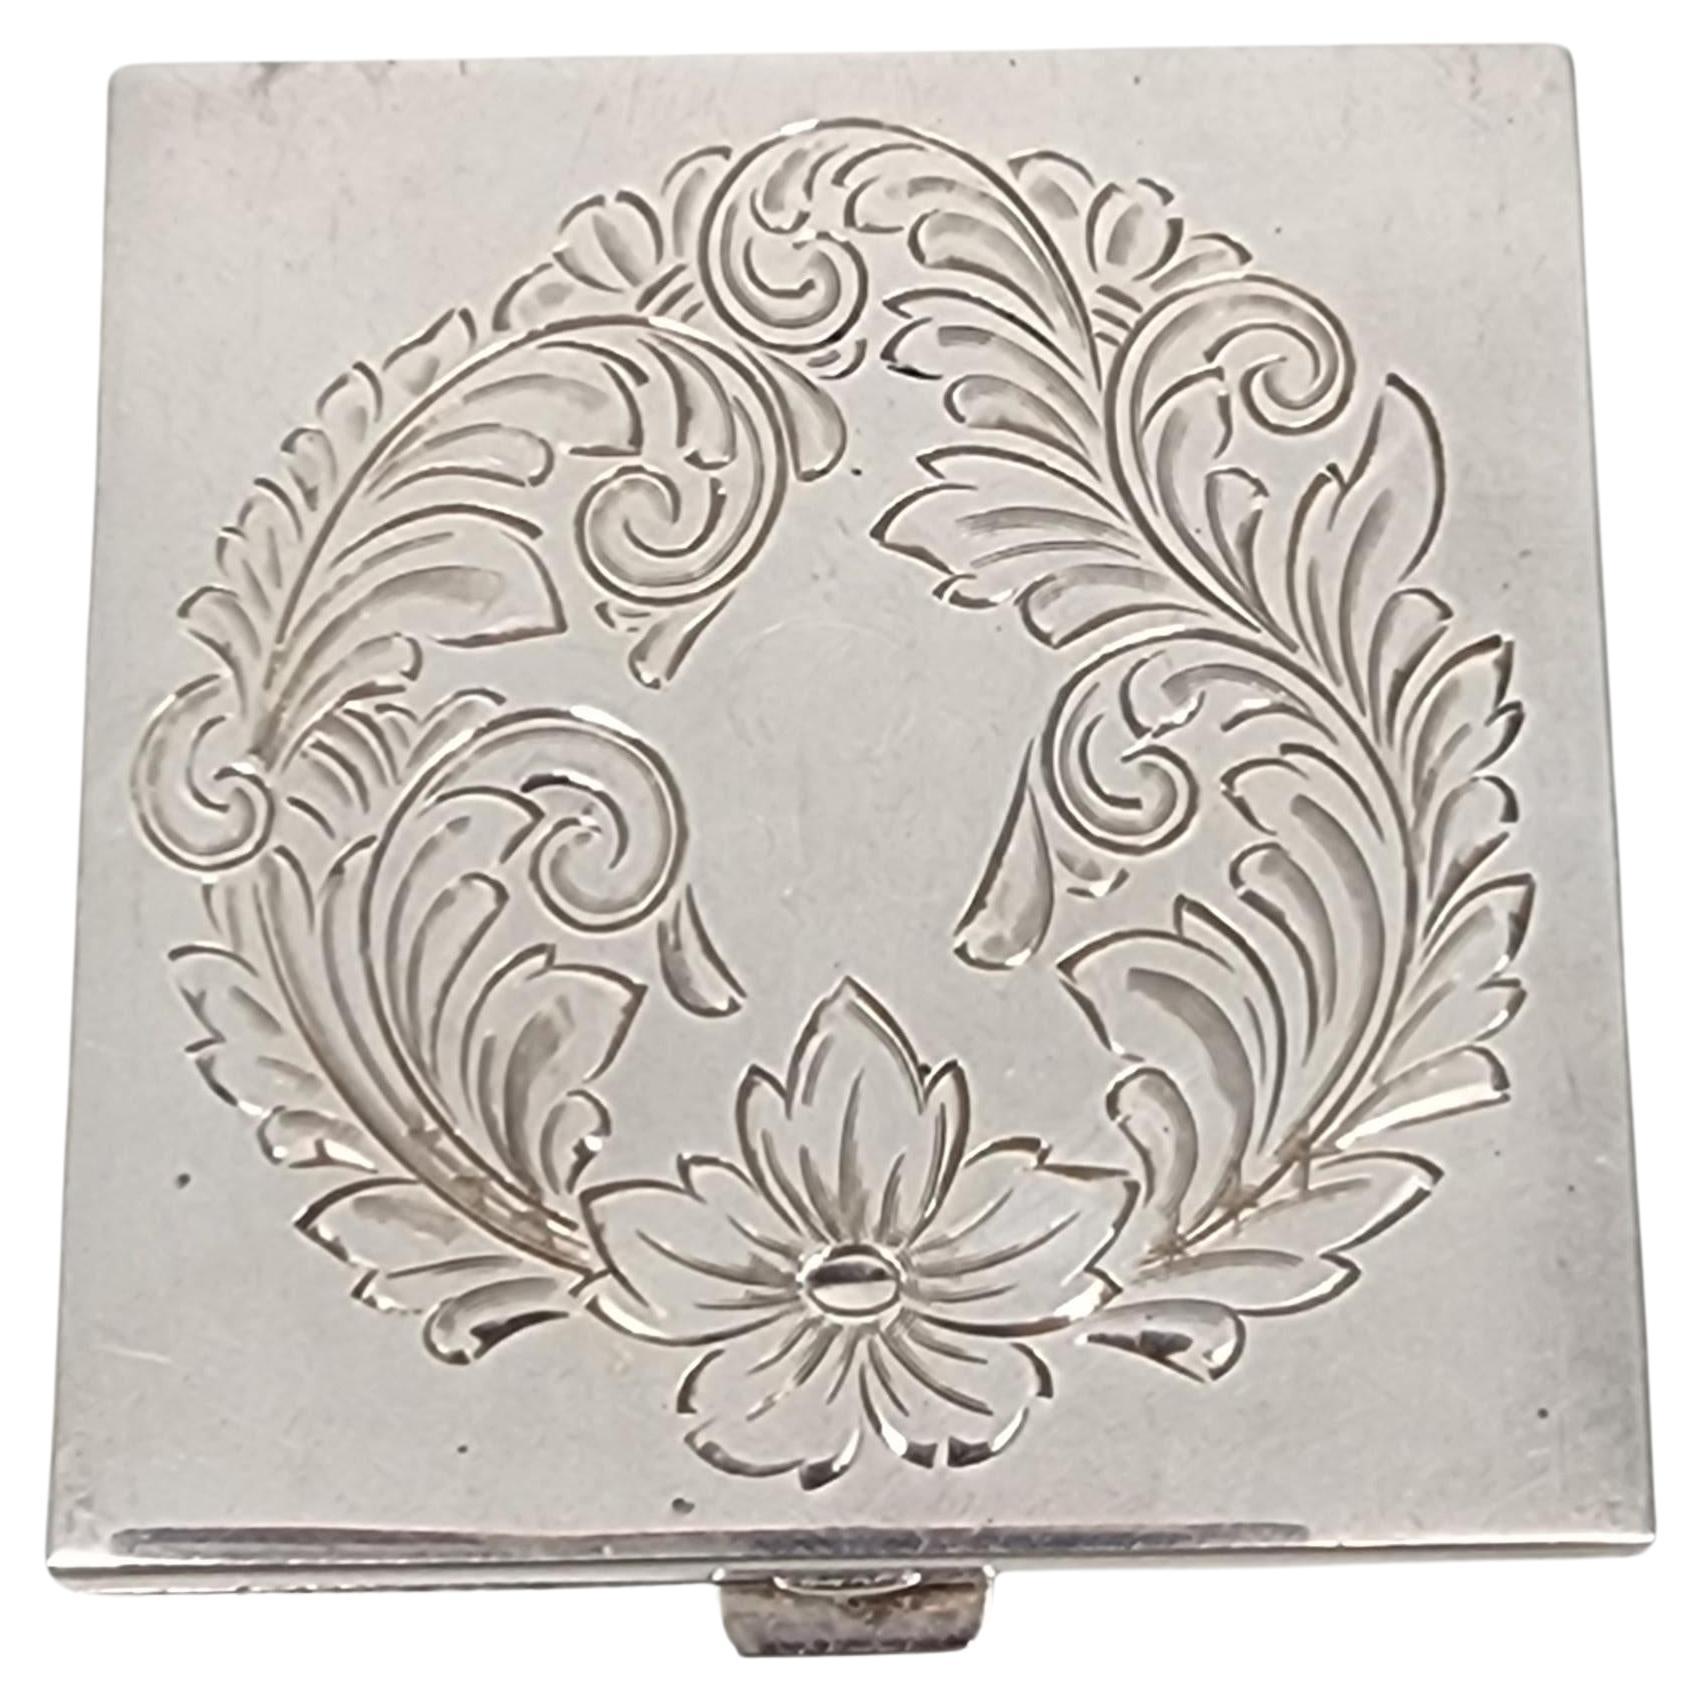 Thomae Co Sterling Silber Spiegel Pulver kompakt mit Initial #16522